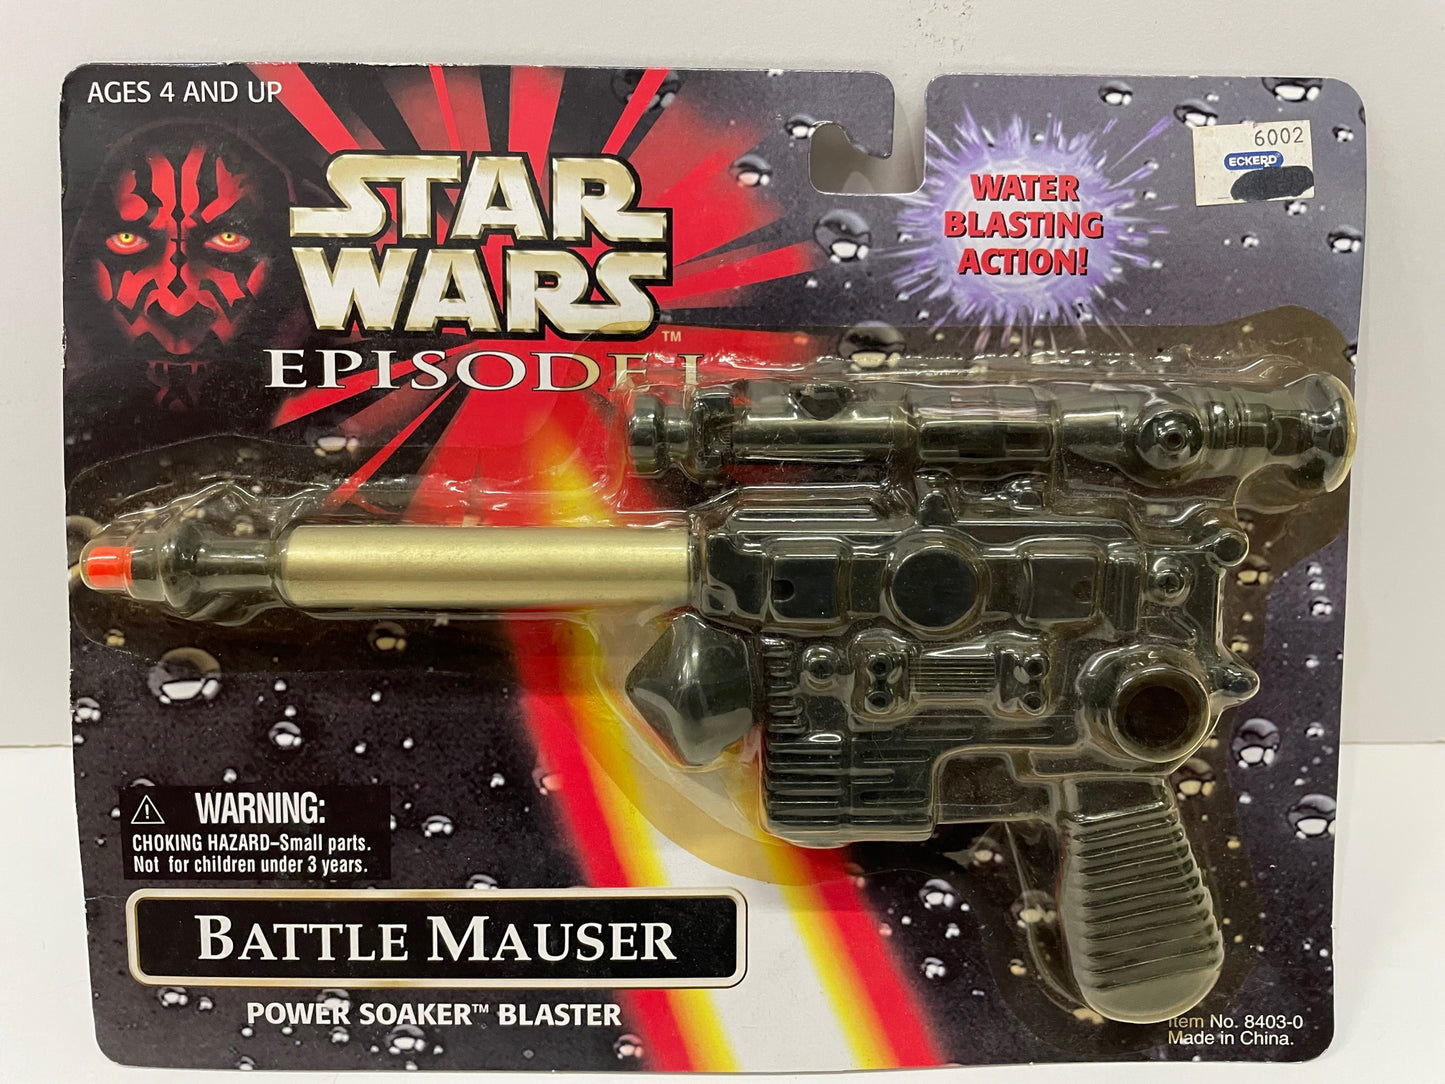 Episode 1 Battle Mauser Soaker Blaster, Hasbro 1999